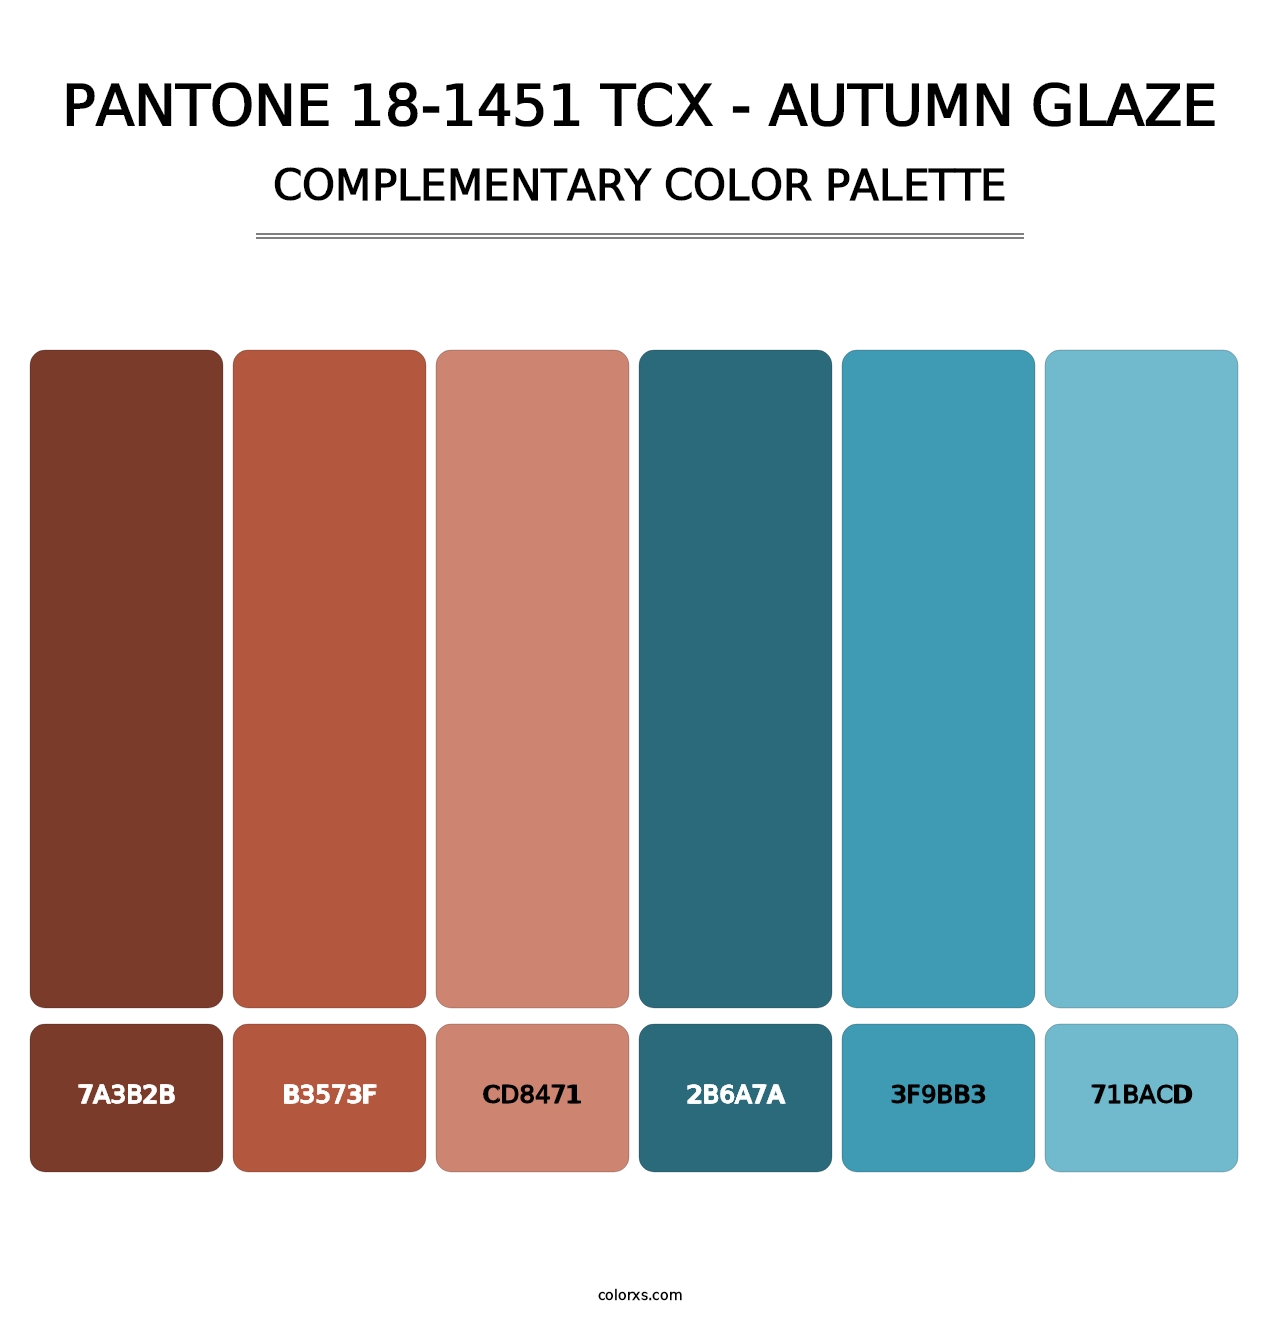 PANTONE 18-1451 TCX - Autumn Glaze - Complementary Color Palette